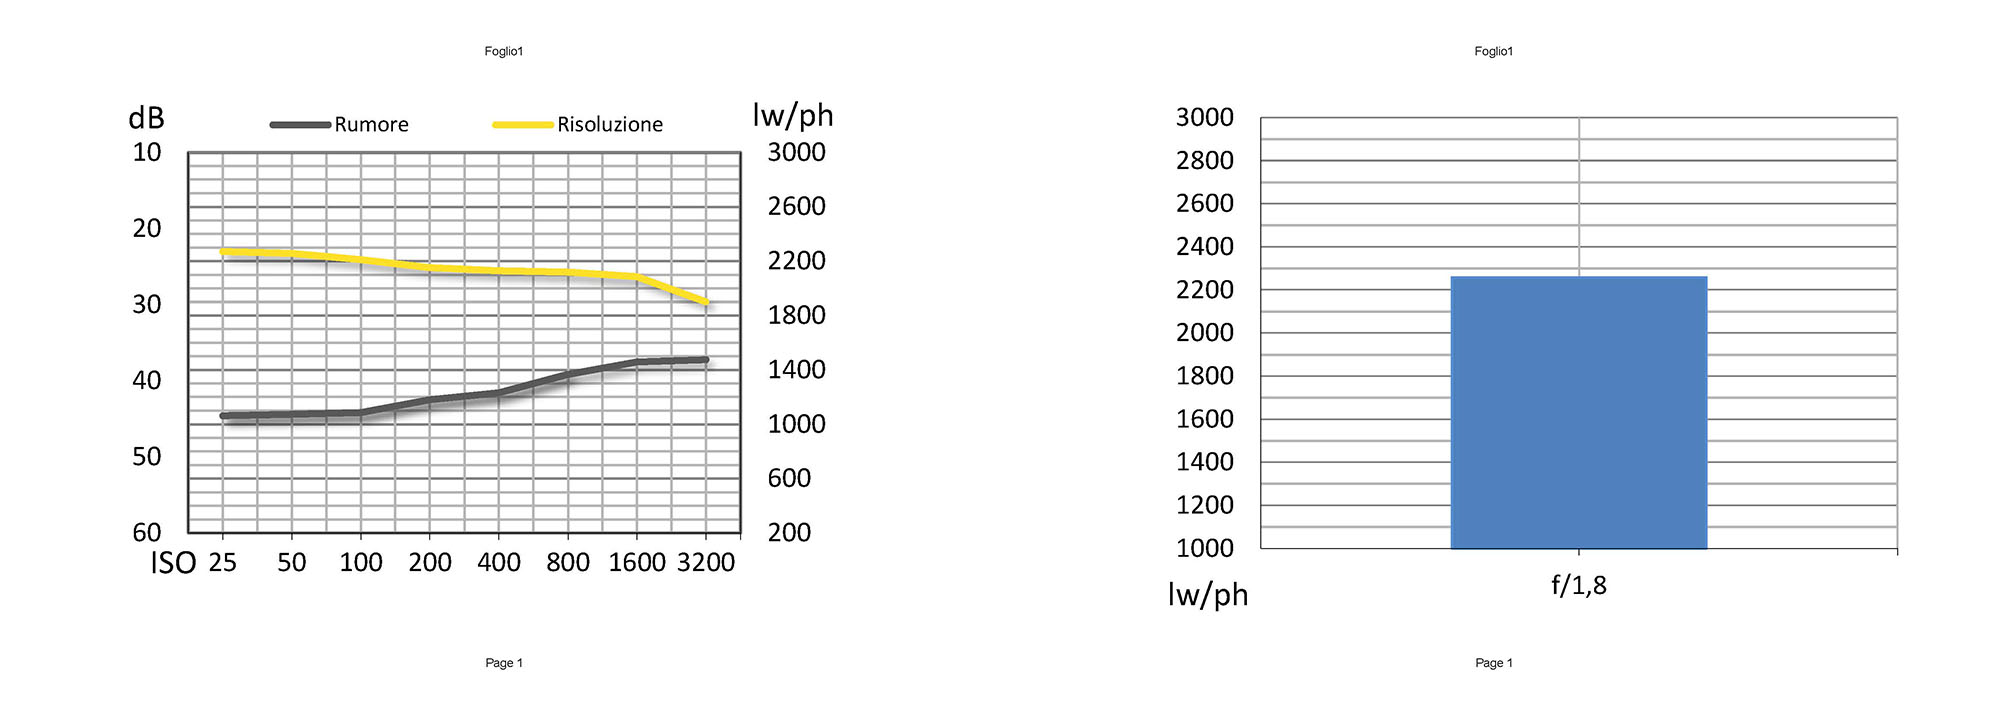 La risoluzione garantita dal sensore da 12 Mpxl è elevata, con un andamento lineare all’aumentare della sensibilità grazie ad un filtro di riduzione del rumore altrettanto progressivo. La risoluzione è di poco inferiore alle 2300 lw/ph, un risultato molto buono vista la risoluzione dichiarata di 12 Mpxl.